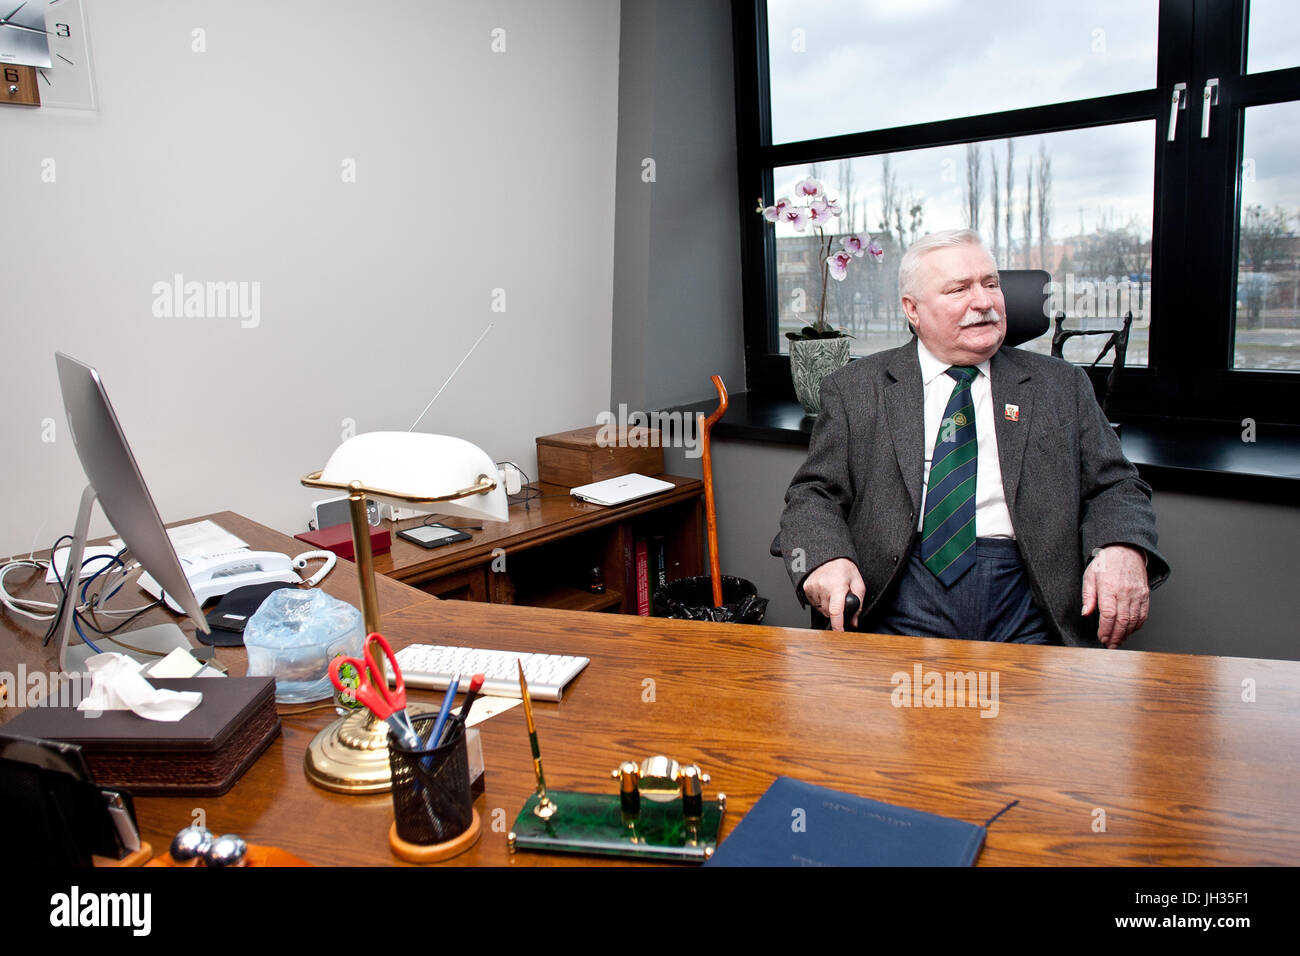 Ehemaliger Präsident von Polen Lech Walesa in seinem Büro im europäischen Solidarität in Danzig, Polen, 2015. Stockfoto